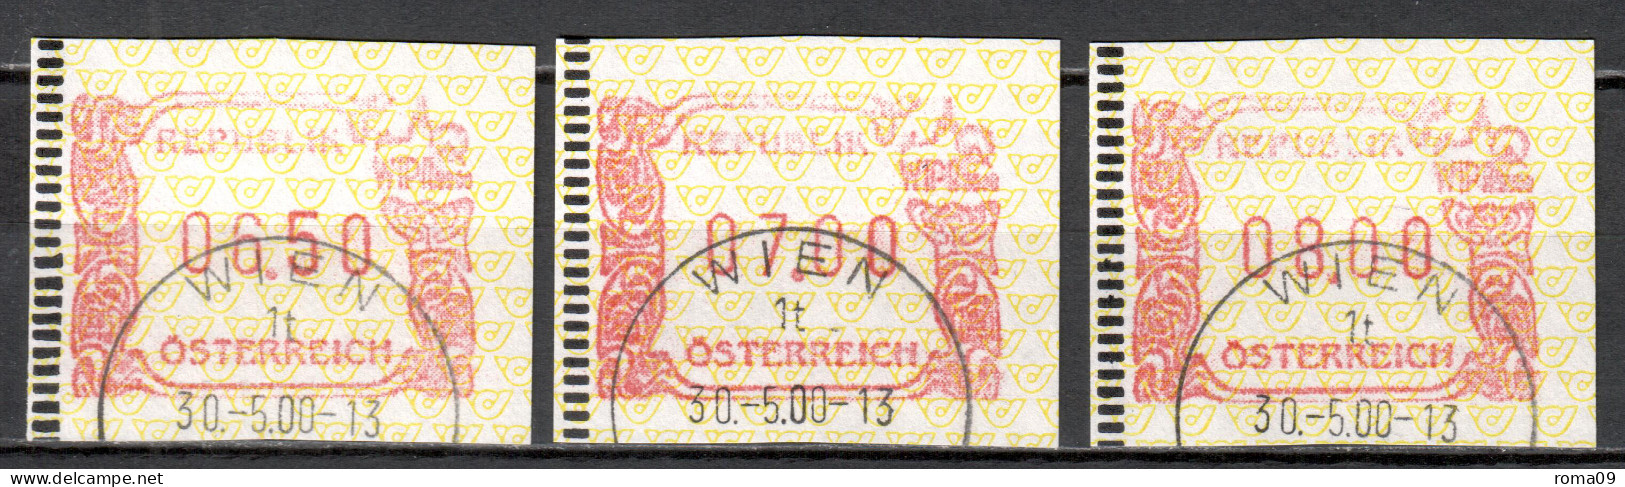 MiNr. ATM 4 (3x), Internationale Briefmarkenausstellung WIPA 2000, Wien; Gestempelt: B - Machine Labels [ATM]